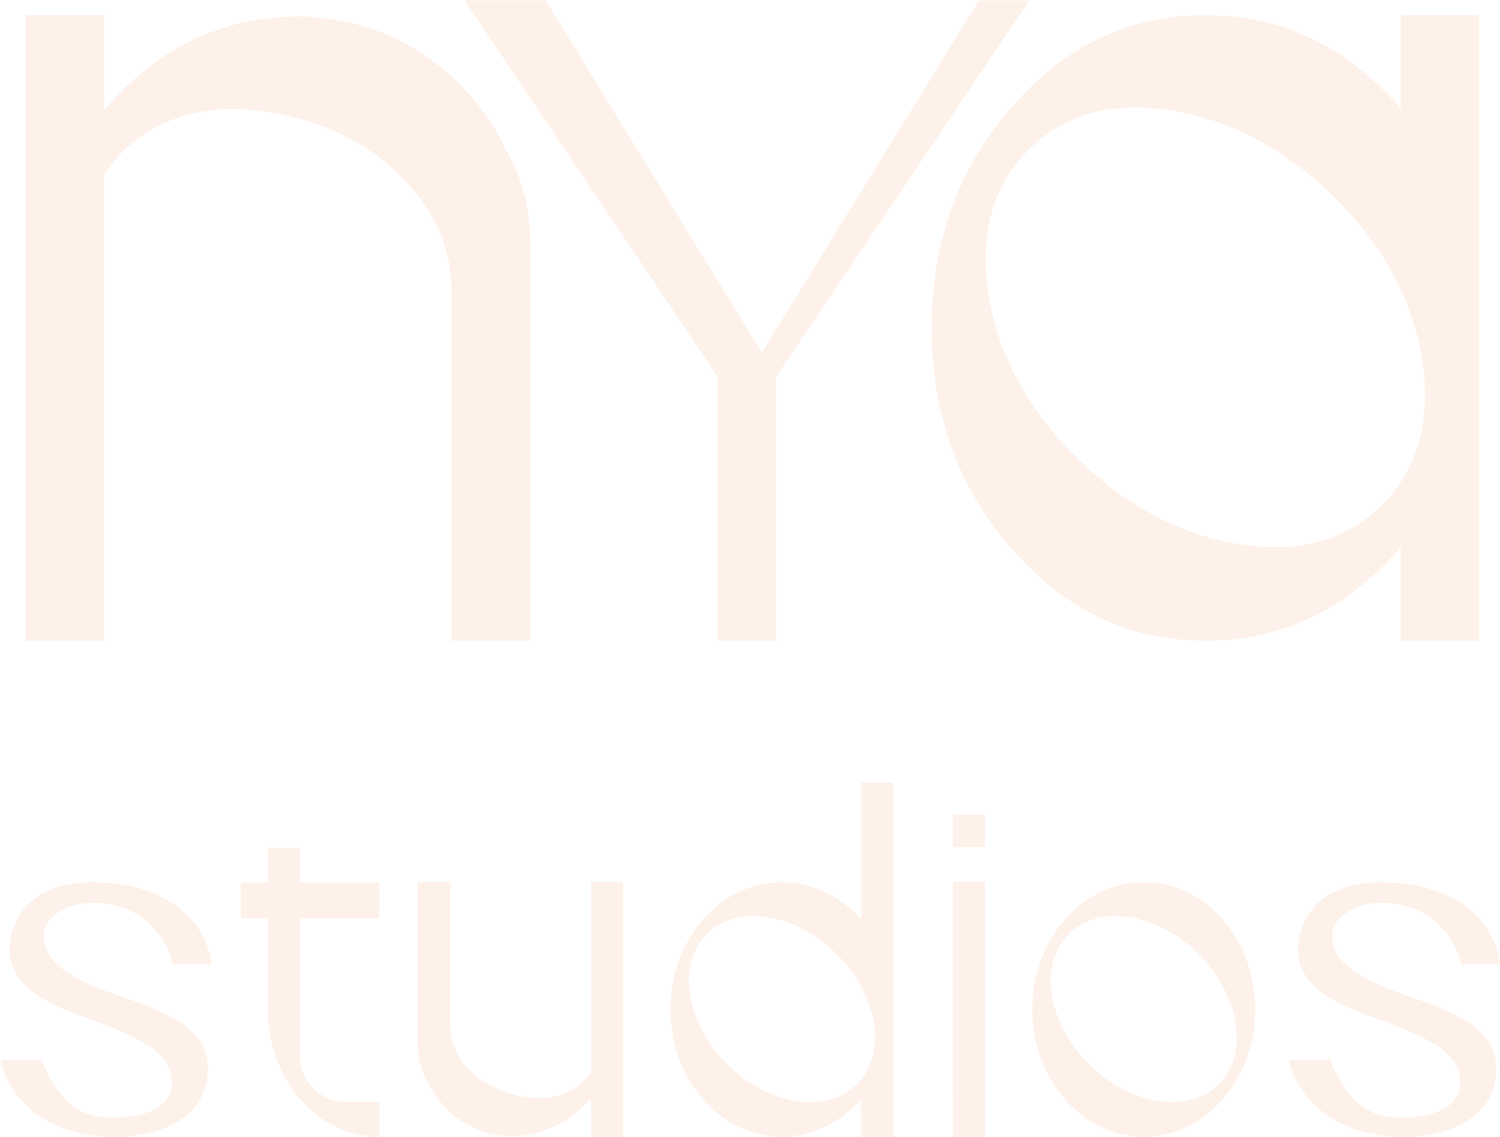 nya Studios